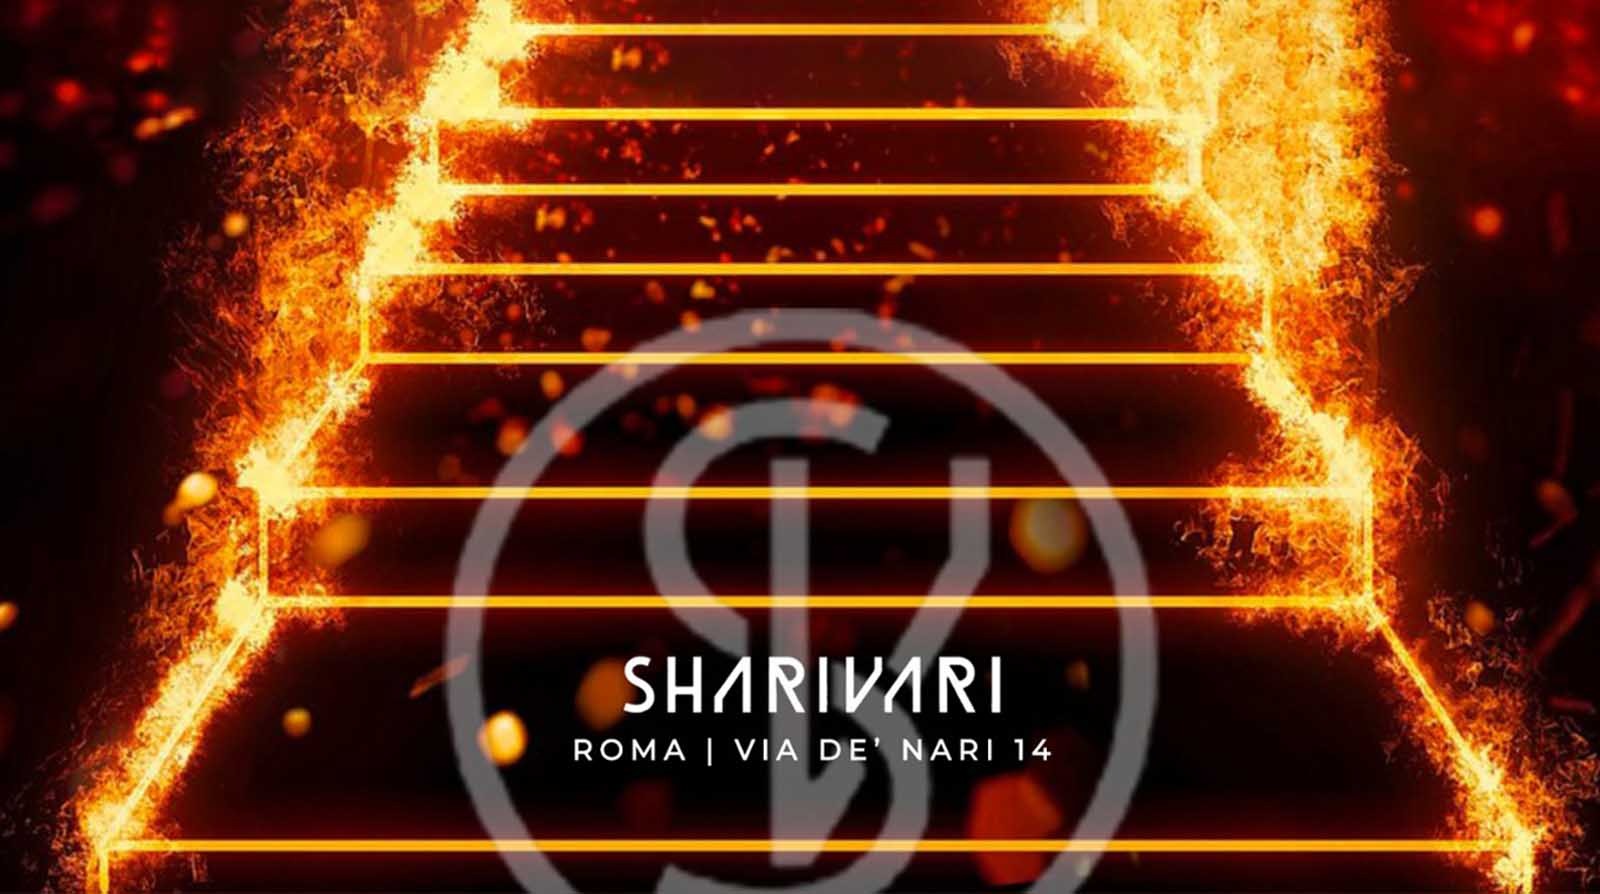 Sharivari - Dal Martedì alla Domenica